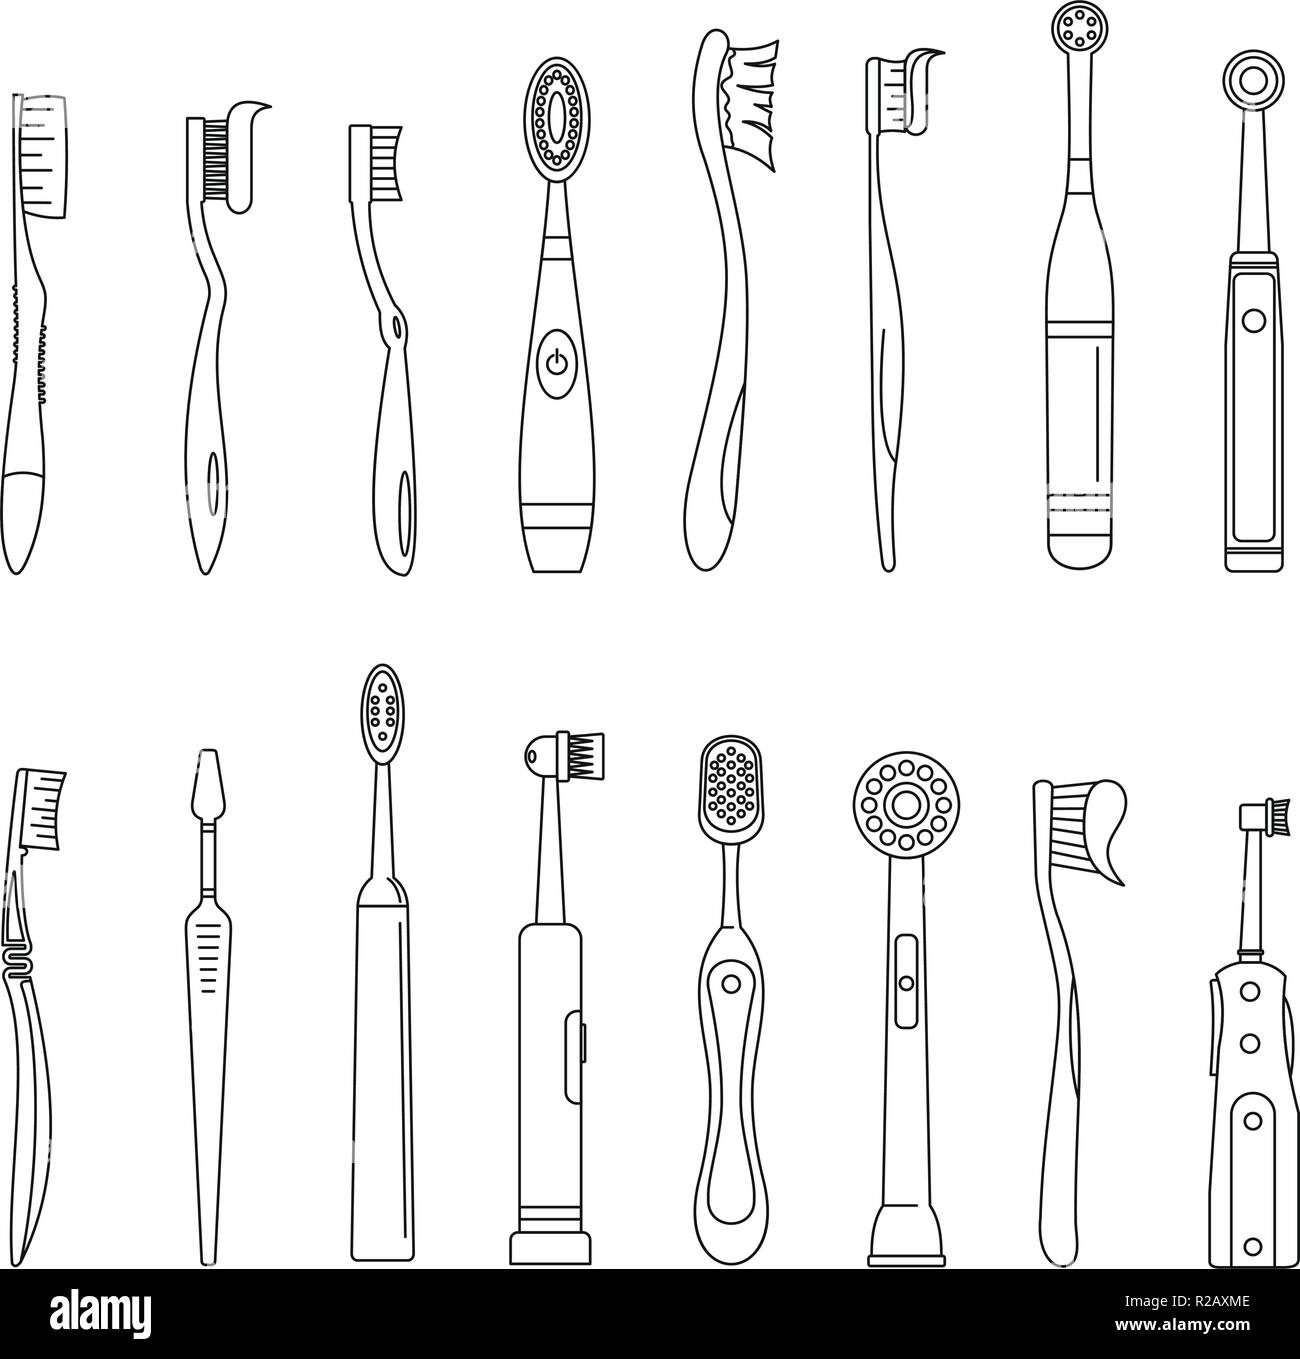 Zahnbürste zahnmedizinische Symbole gesetzt. Überblick Abbildung: 16 Zahnbürste zahnmedizinische Symbole für Web Stock Vektor